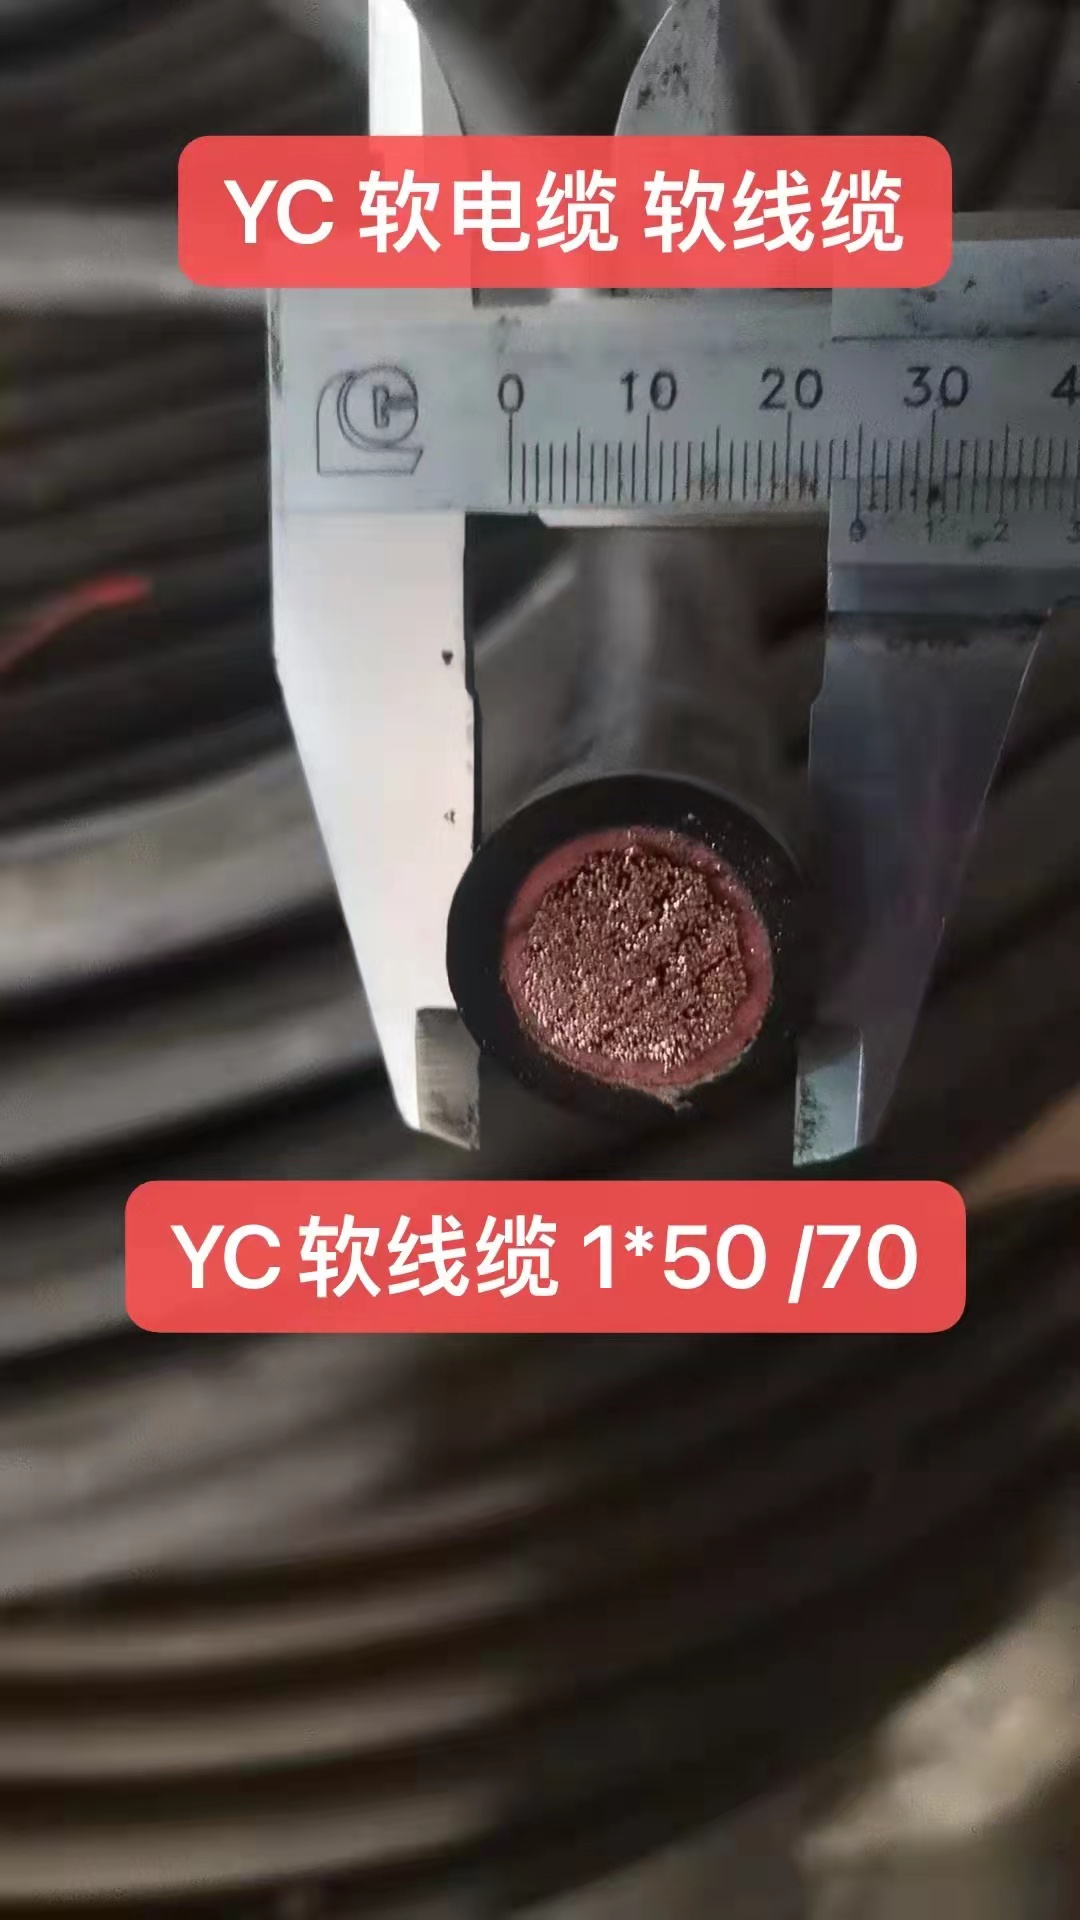 冠缆牌珠江电缆YC软电缆 YC软线缆1*50 /70